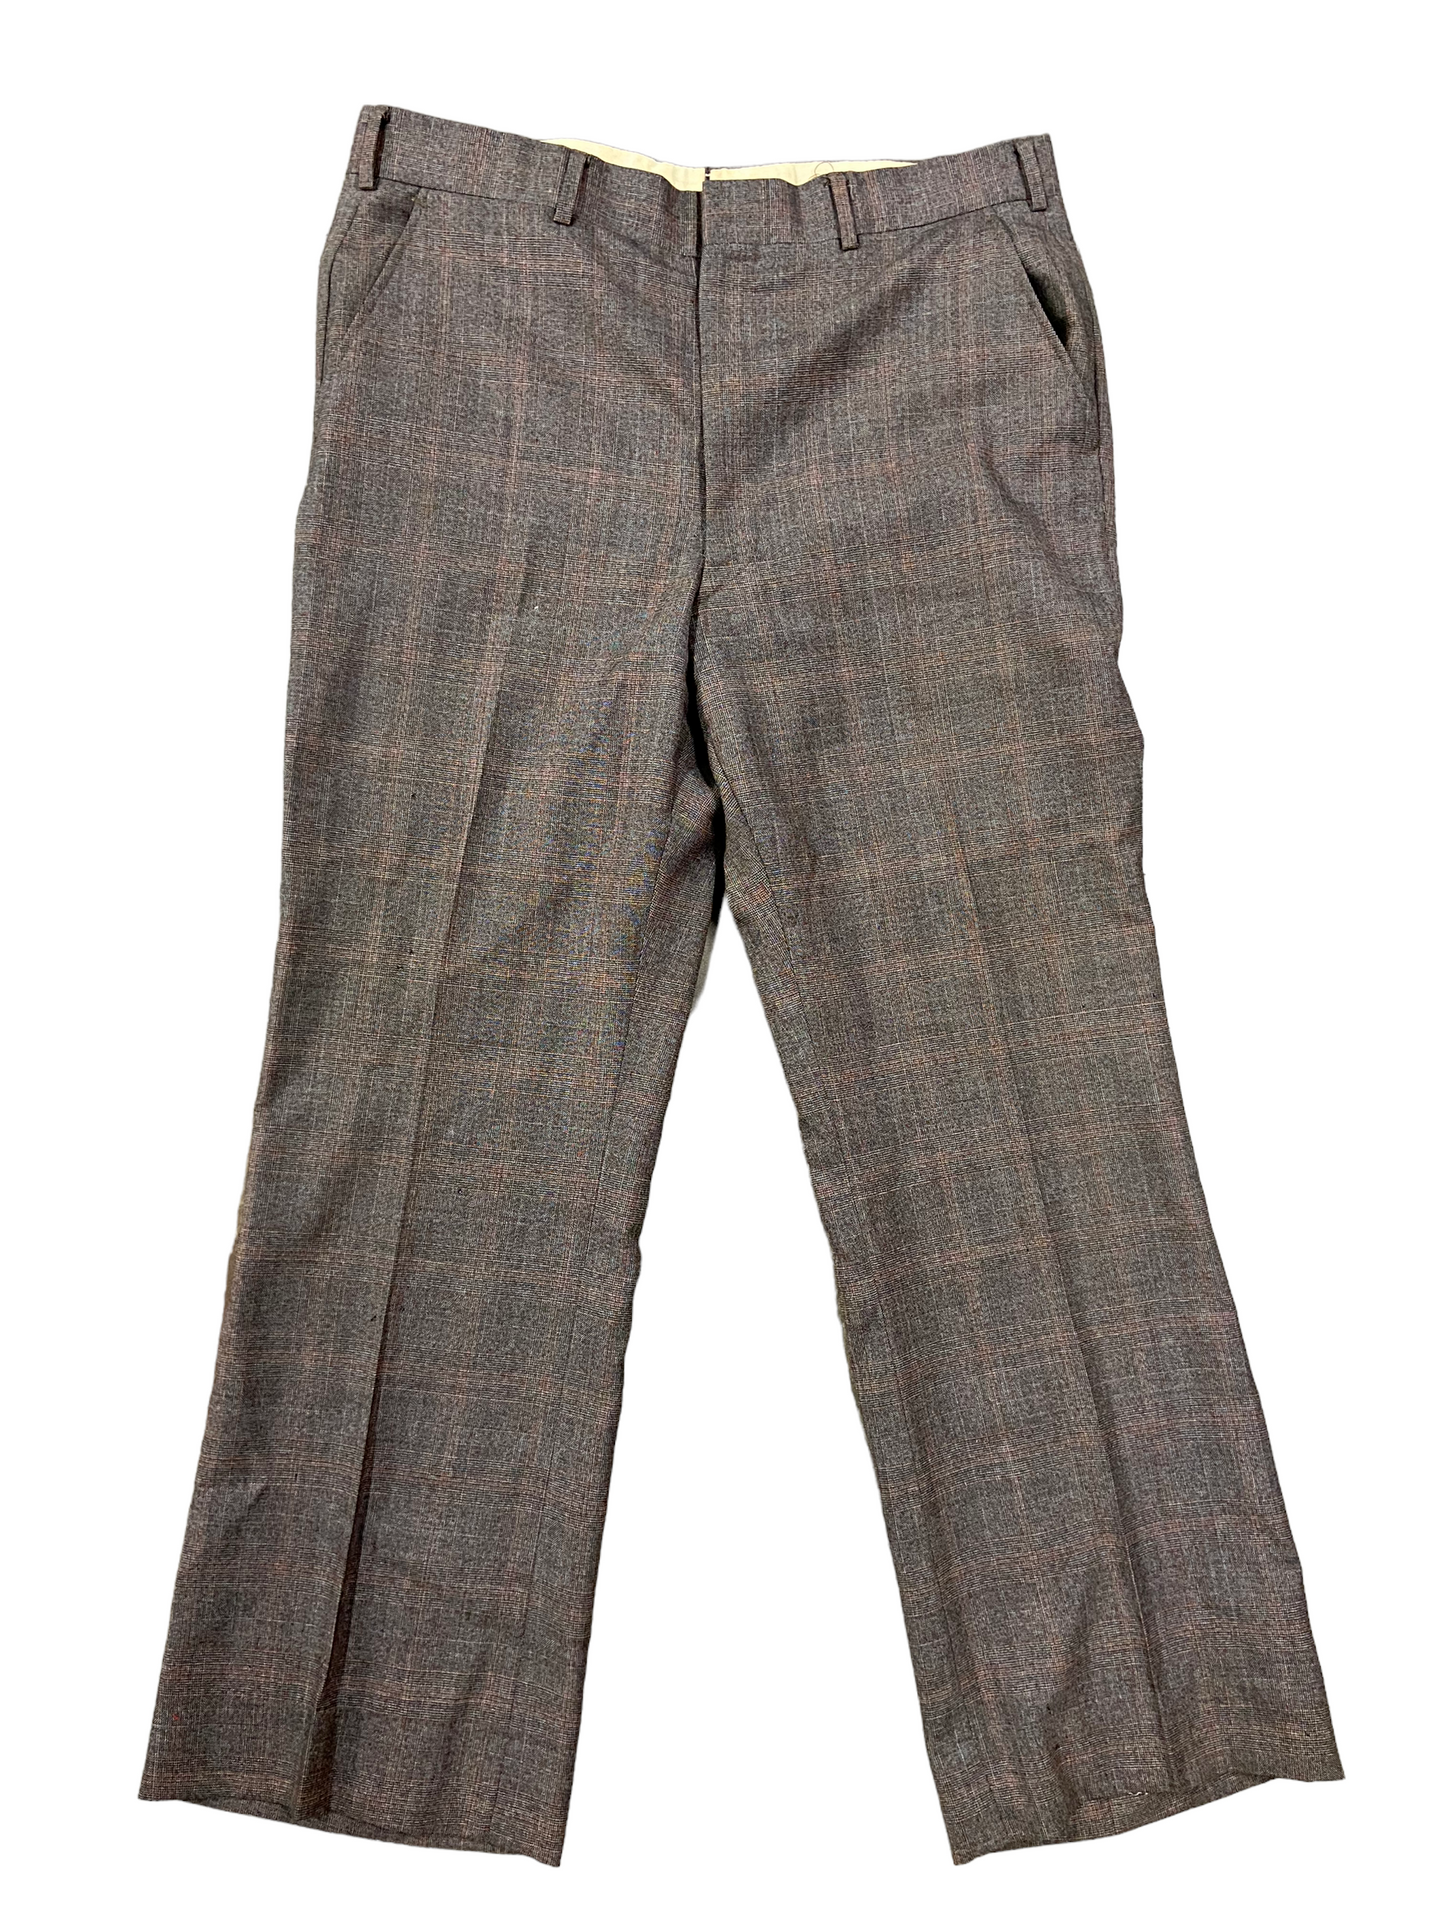 VTG Brown Trouser Pants Sz 35x29